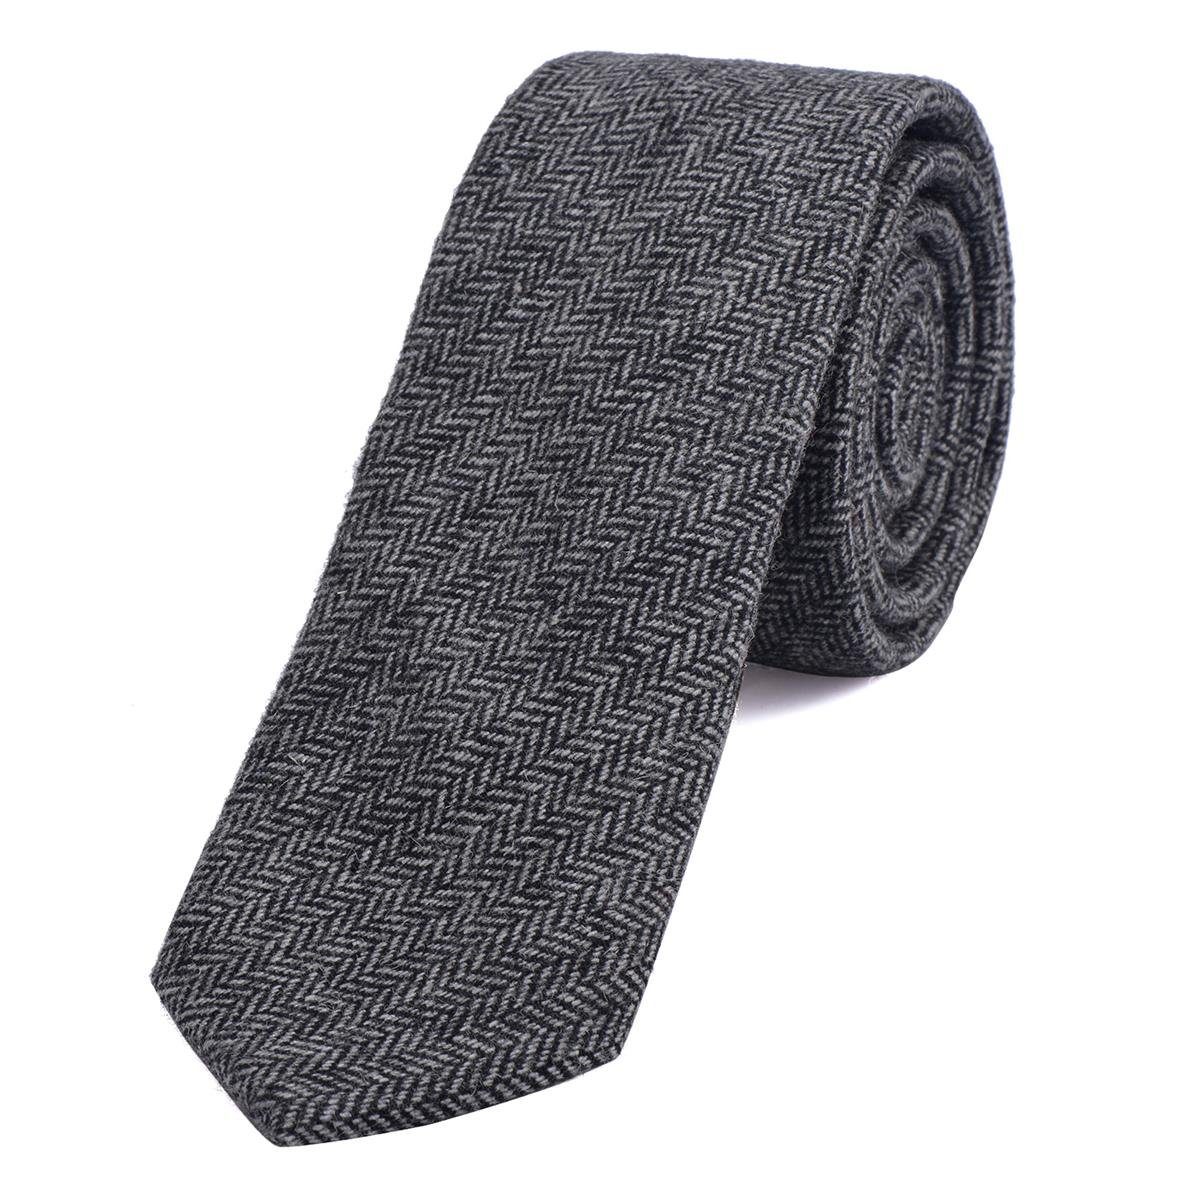 DonDon Krawatte Herren Krawatte 6 cm einfarbig kariert und gepunkt (Packung, 1-St., 1x Krawatte) Baumwolle, verschiedene Muster, für Büro oder festliche Veranstaltungen schwarz-grau Fischgrätmuster